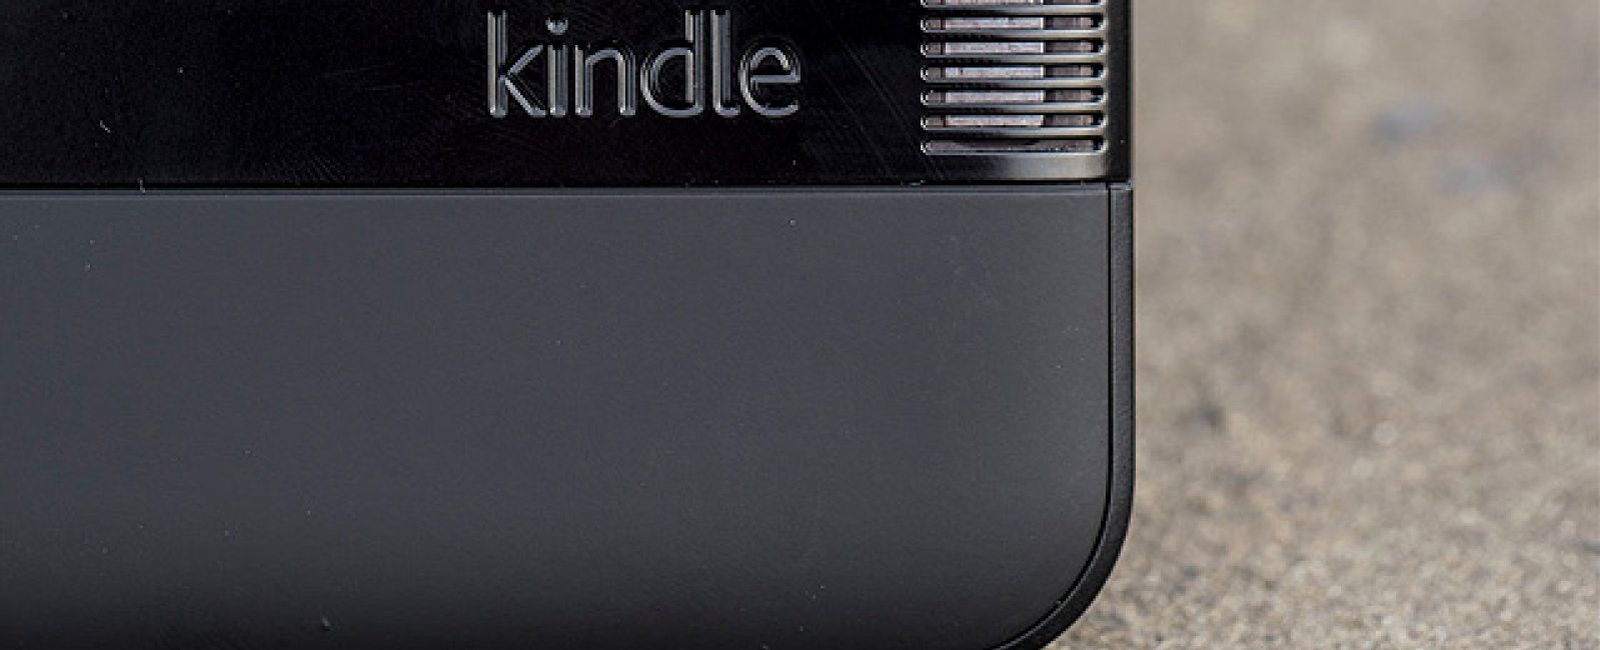 Foto: Kindle Fire HD, una tableta solo indicada para 'fans' de Amazon